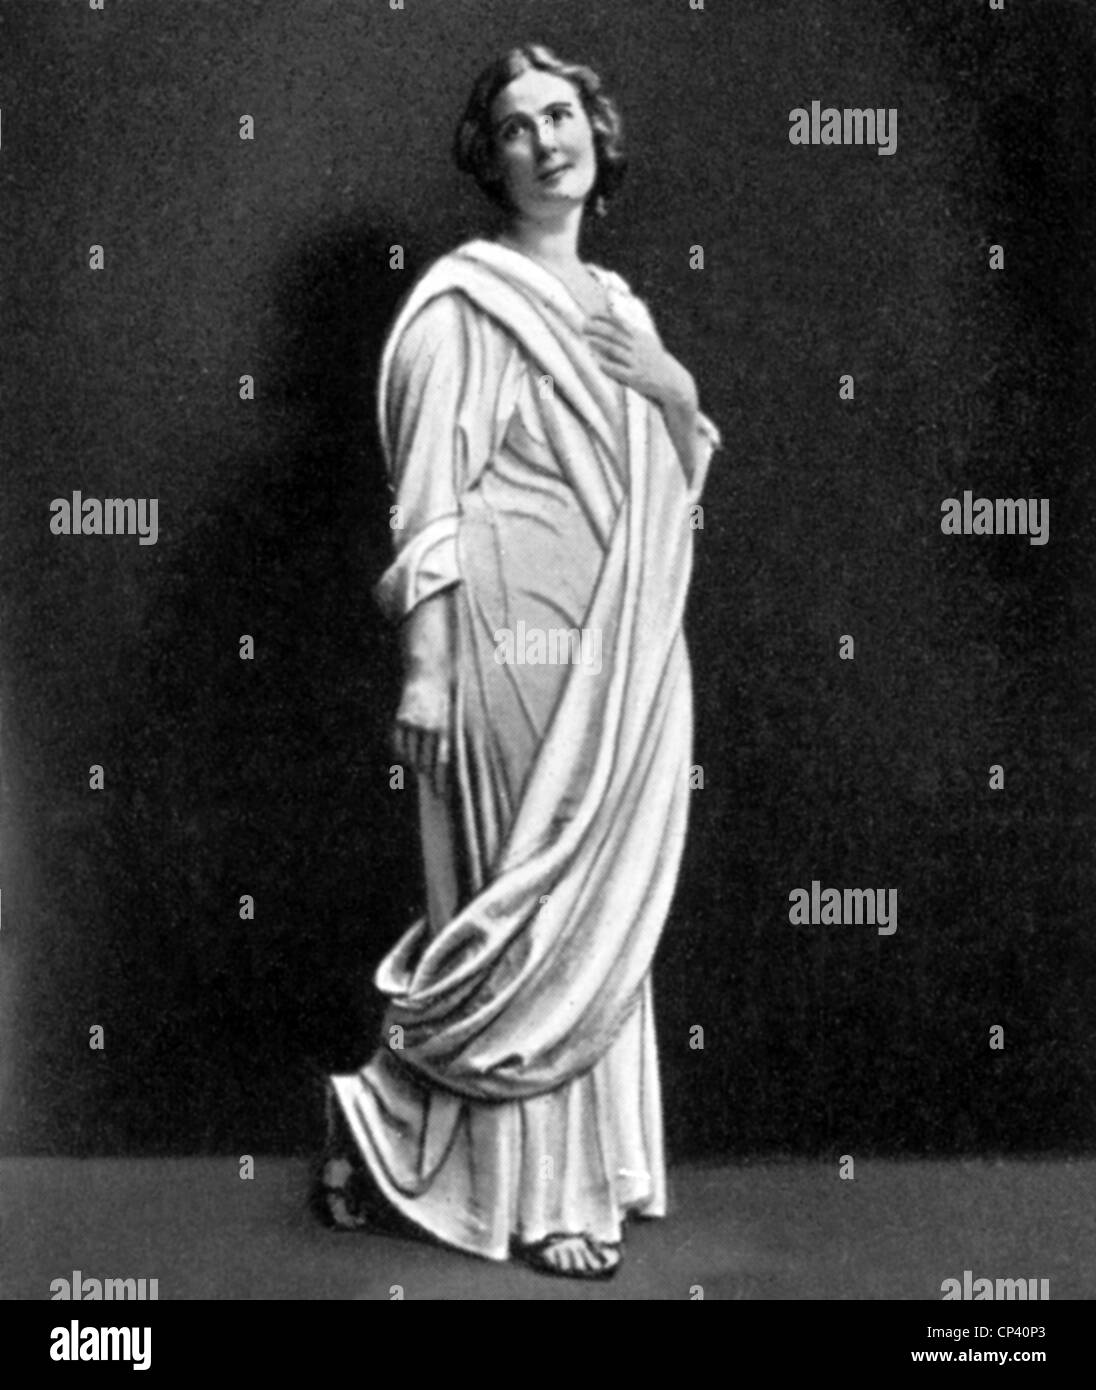 Duncan, Isadora, 26.5.1877 - 14.9.1927, danseuse et chorégraphe américaine, pleine longueur, carte à cigarettes, vers 1910, costume grec, ancien, XXe siècle, Banque D'Images